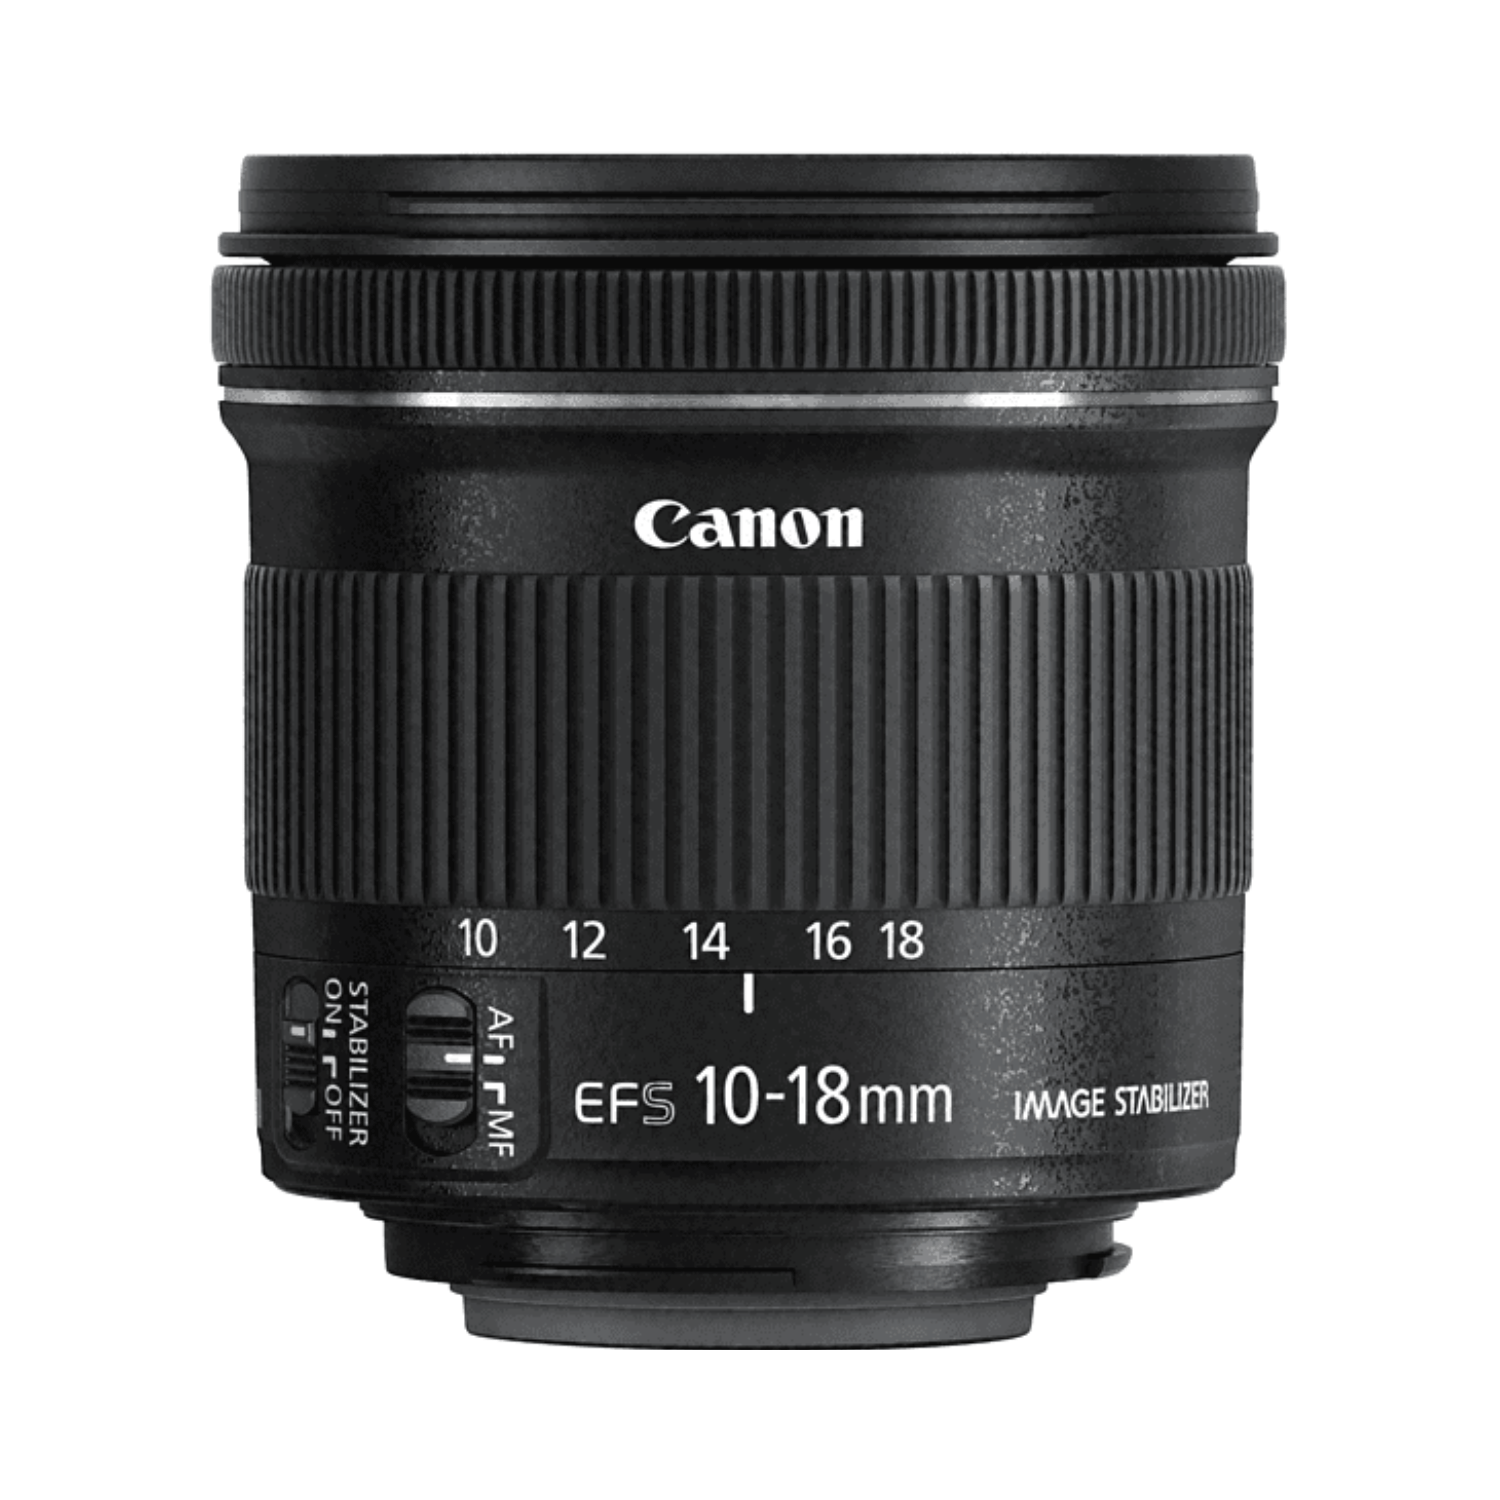 Canon EF-S 10-18mm f4.5-5.6 IS STM -Gar. Canon Italia -Cine Sud è da 48 anni sul mercato! 9519B005